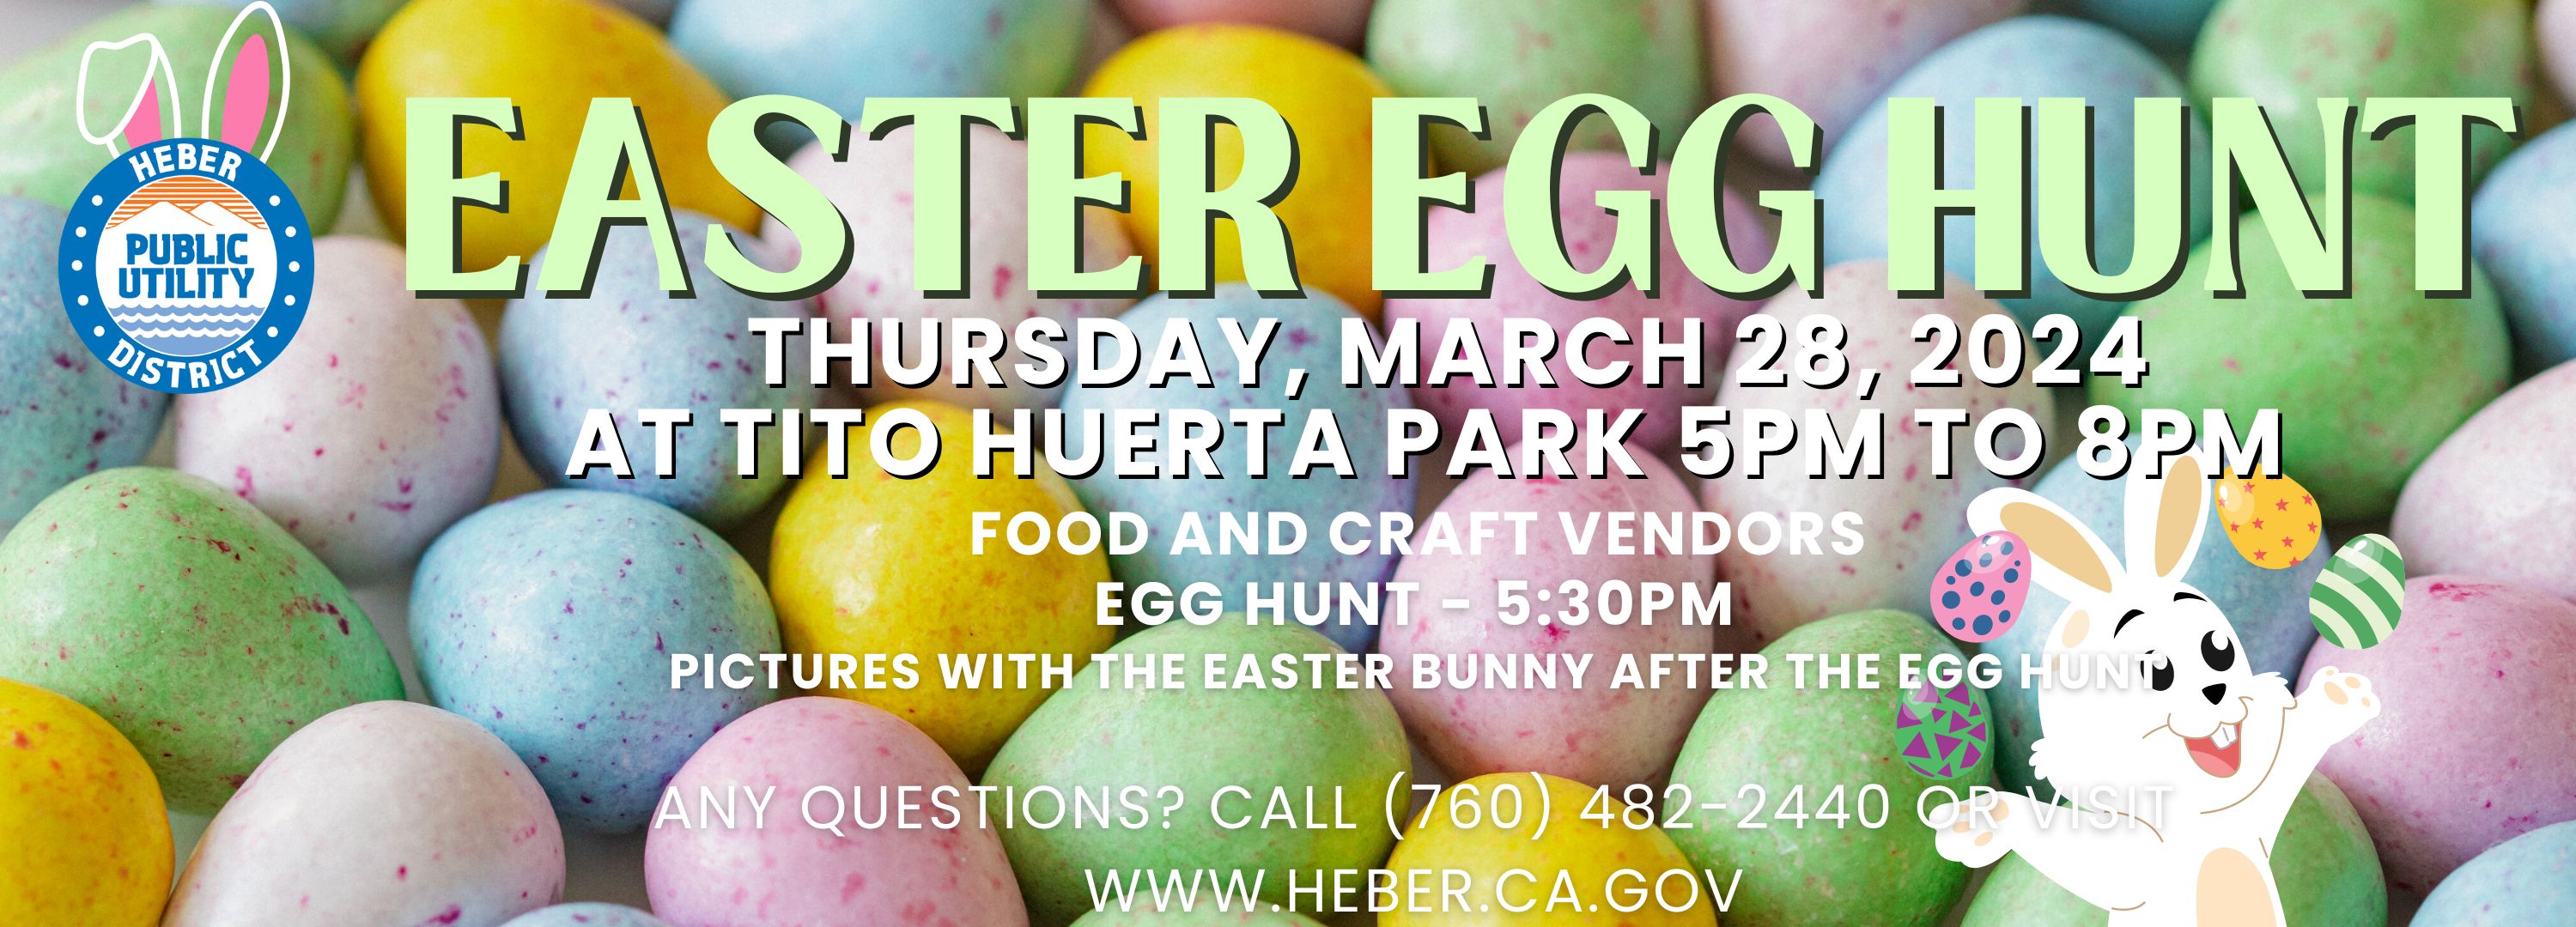 Easter Egg Hunt March 28,2024